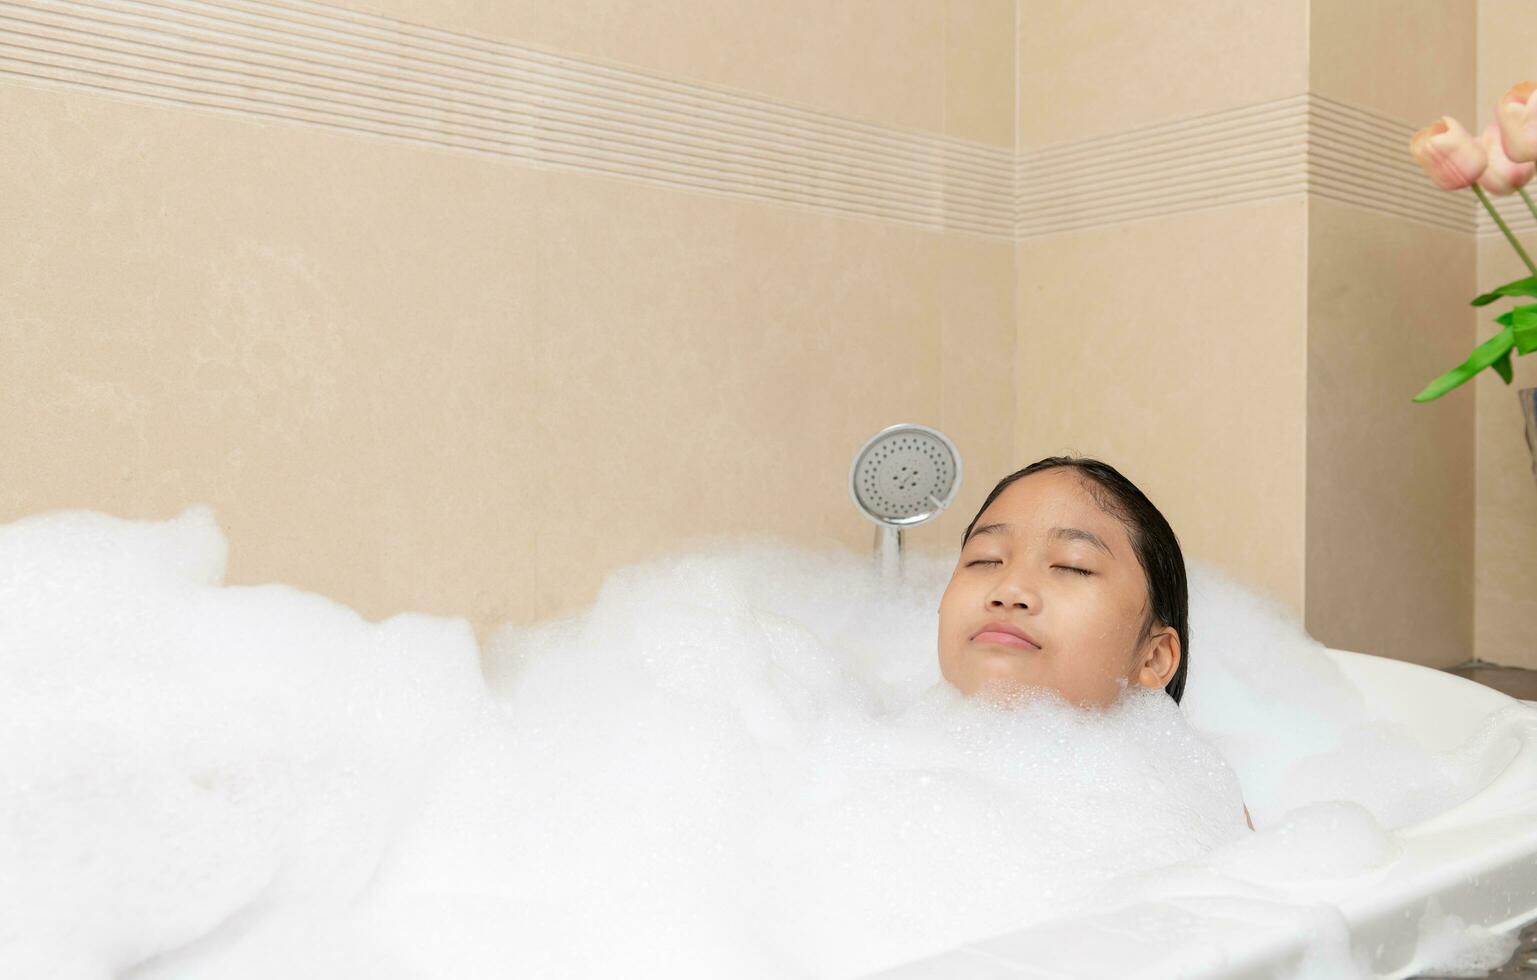 bagnarsi poco ragazza rilassante nel bagno sorridente rilassante. caucasico bambino donna nel vasca da bagno. foto